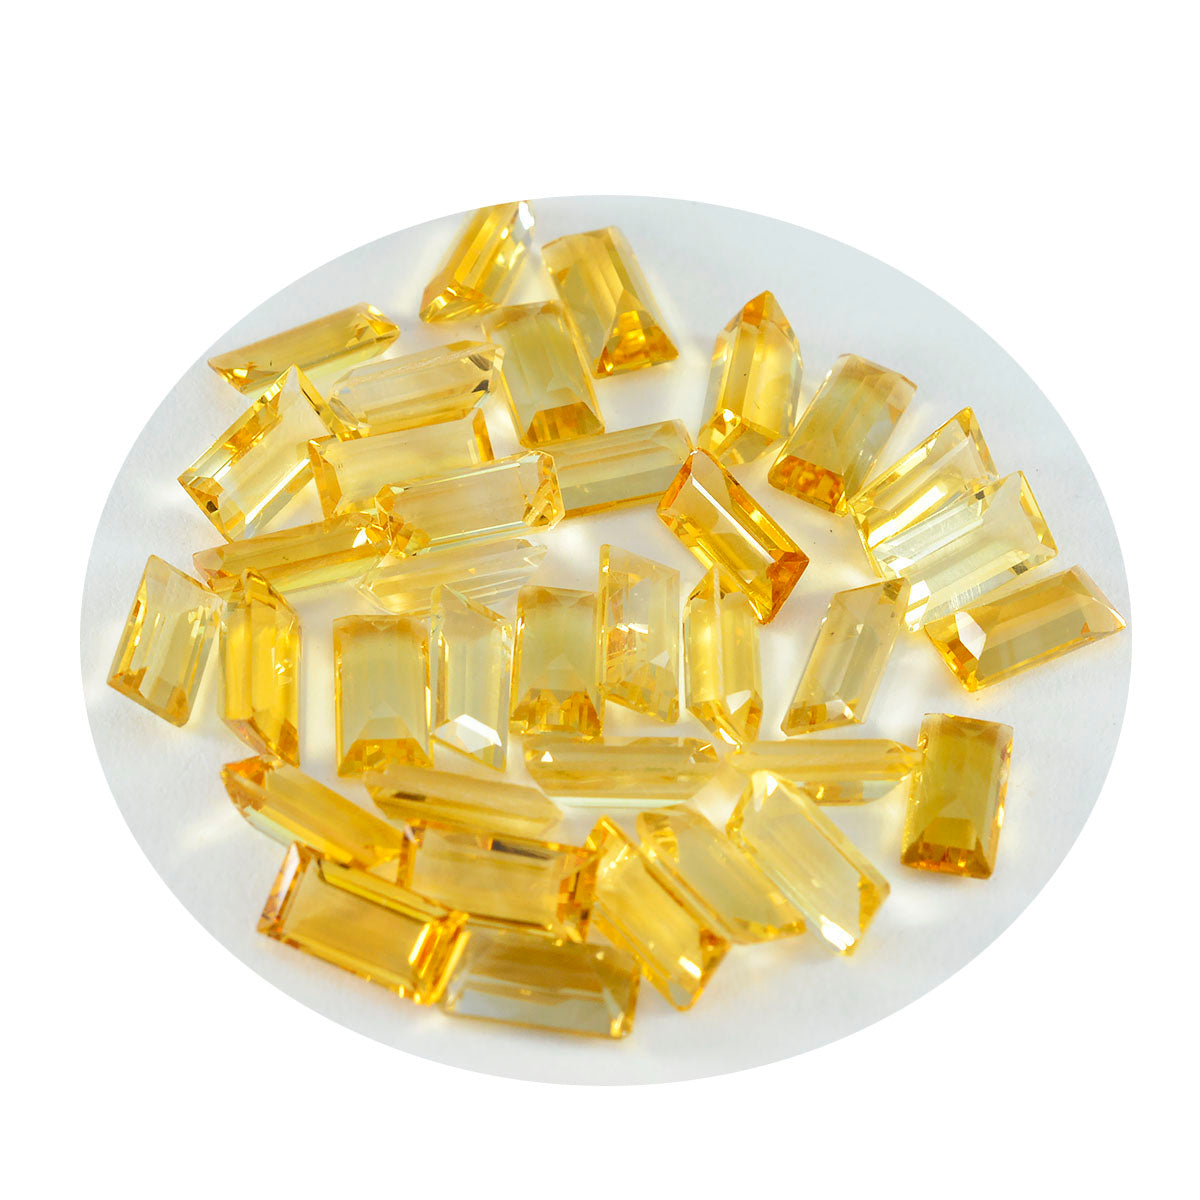 riyogems 1 шт. натуральный желтый цитрин ограненный 4x8 мм драгоценный камень в форме багета превосходного качества